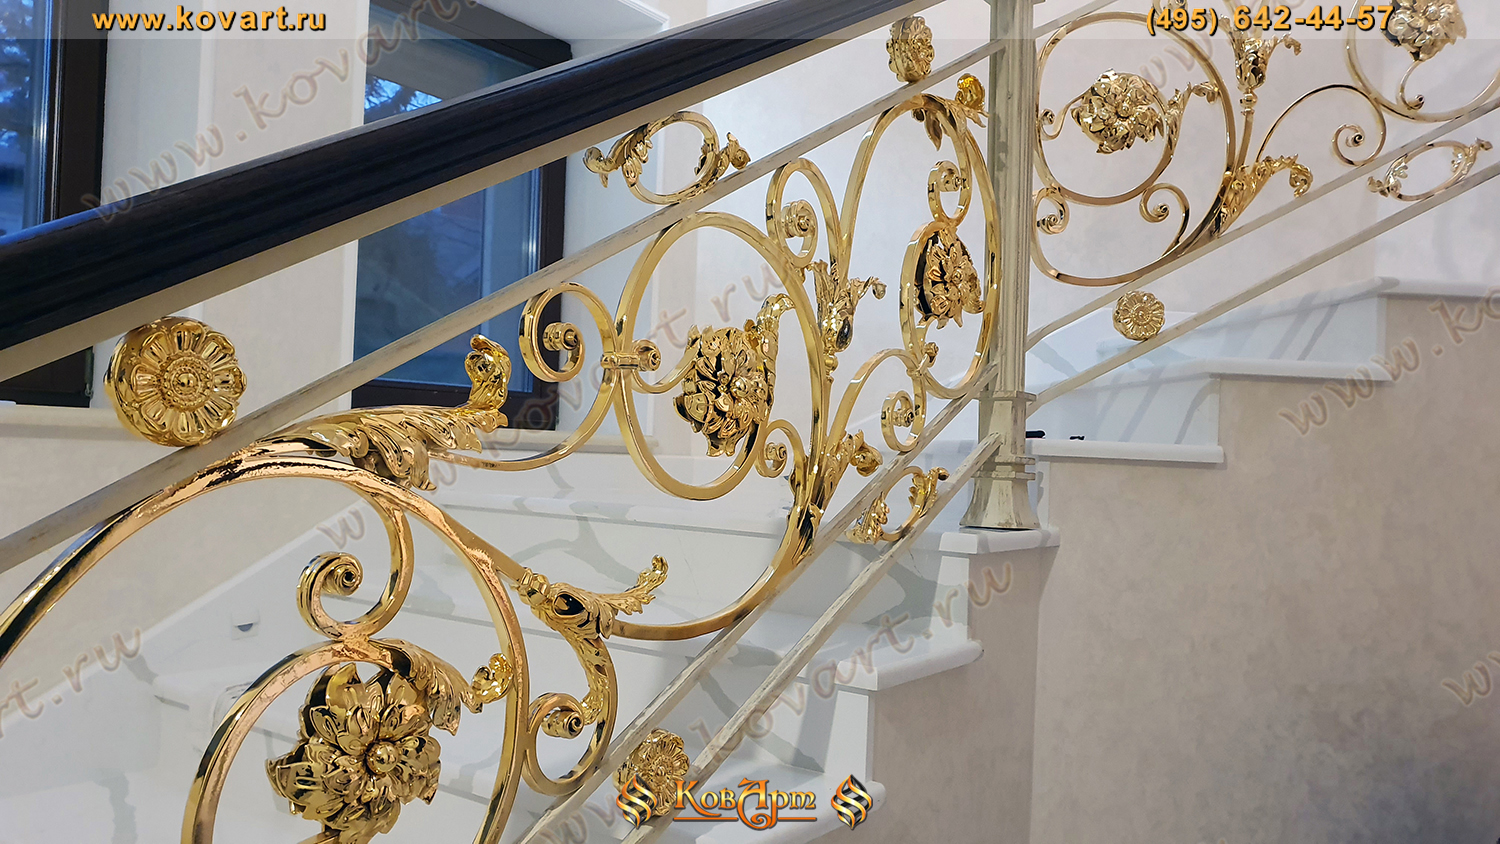 Мраморная лестница с кованым золотым узором на перилах Код: ЛП-021/63